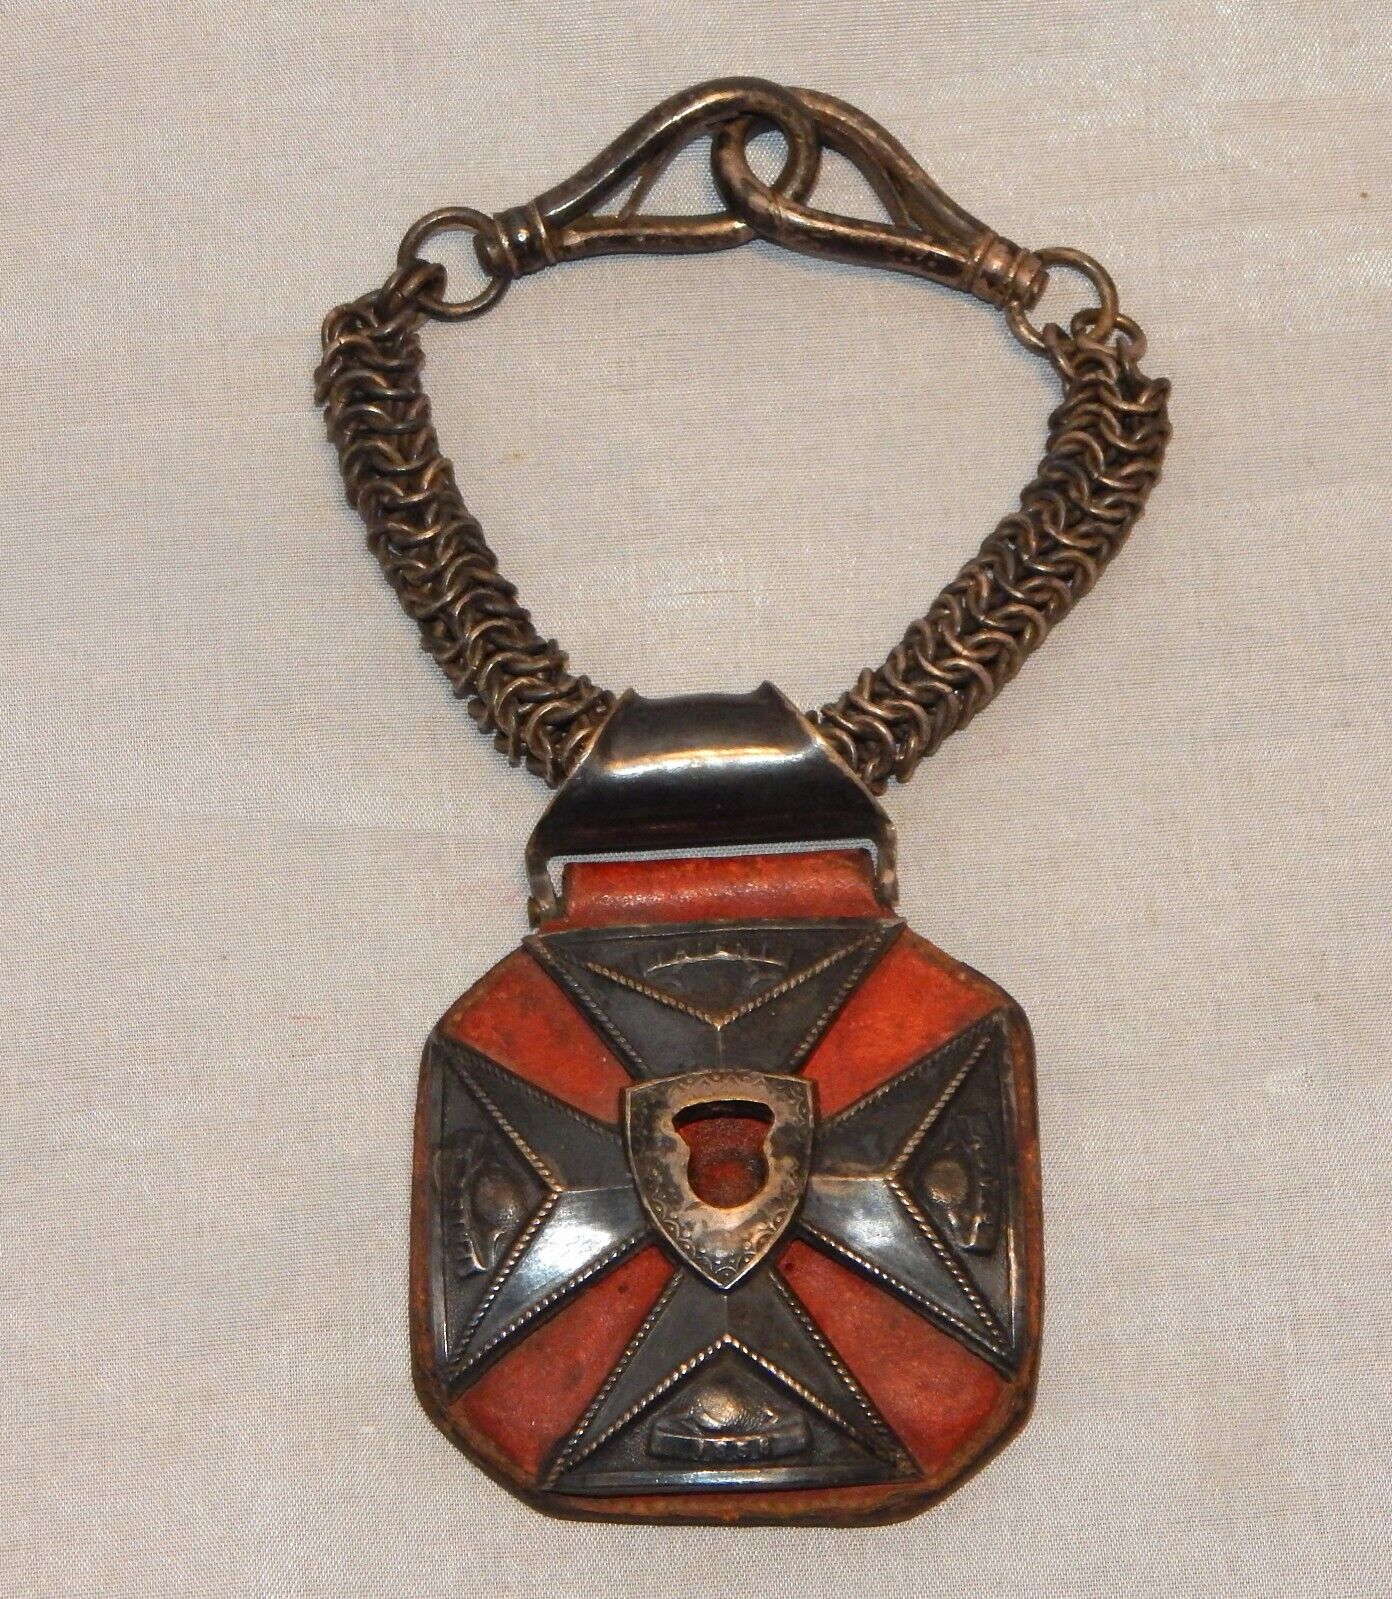 Knights Templar Antique 1858-1868 Malta Cross Jewel Civil War Era Masonic